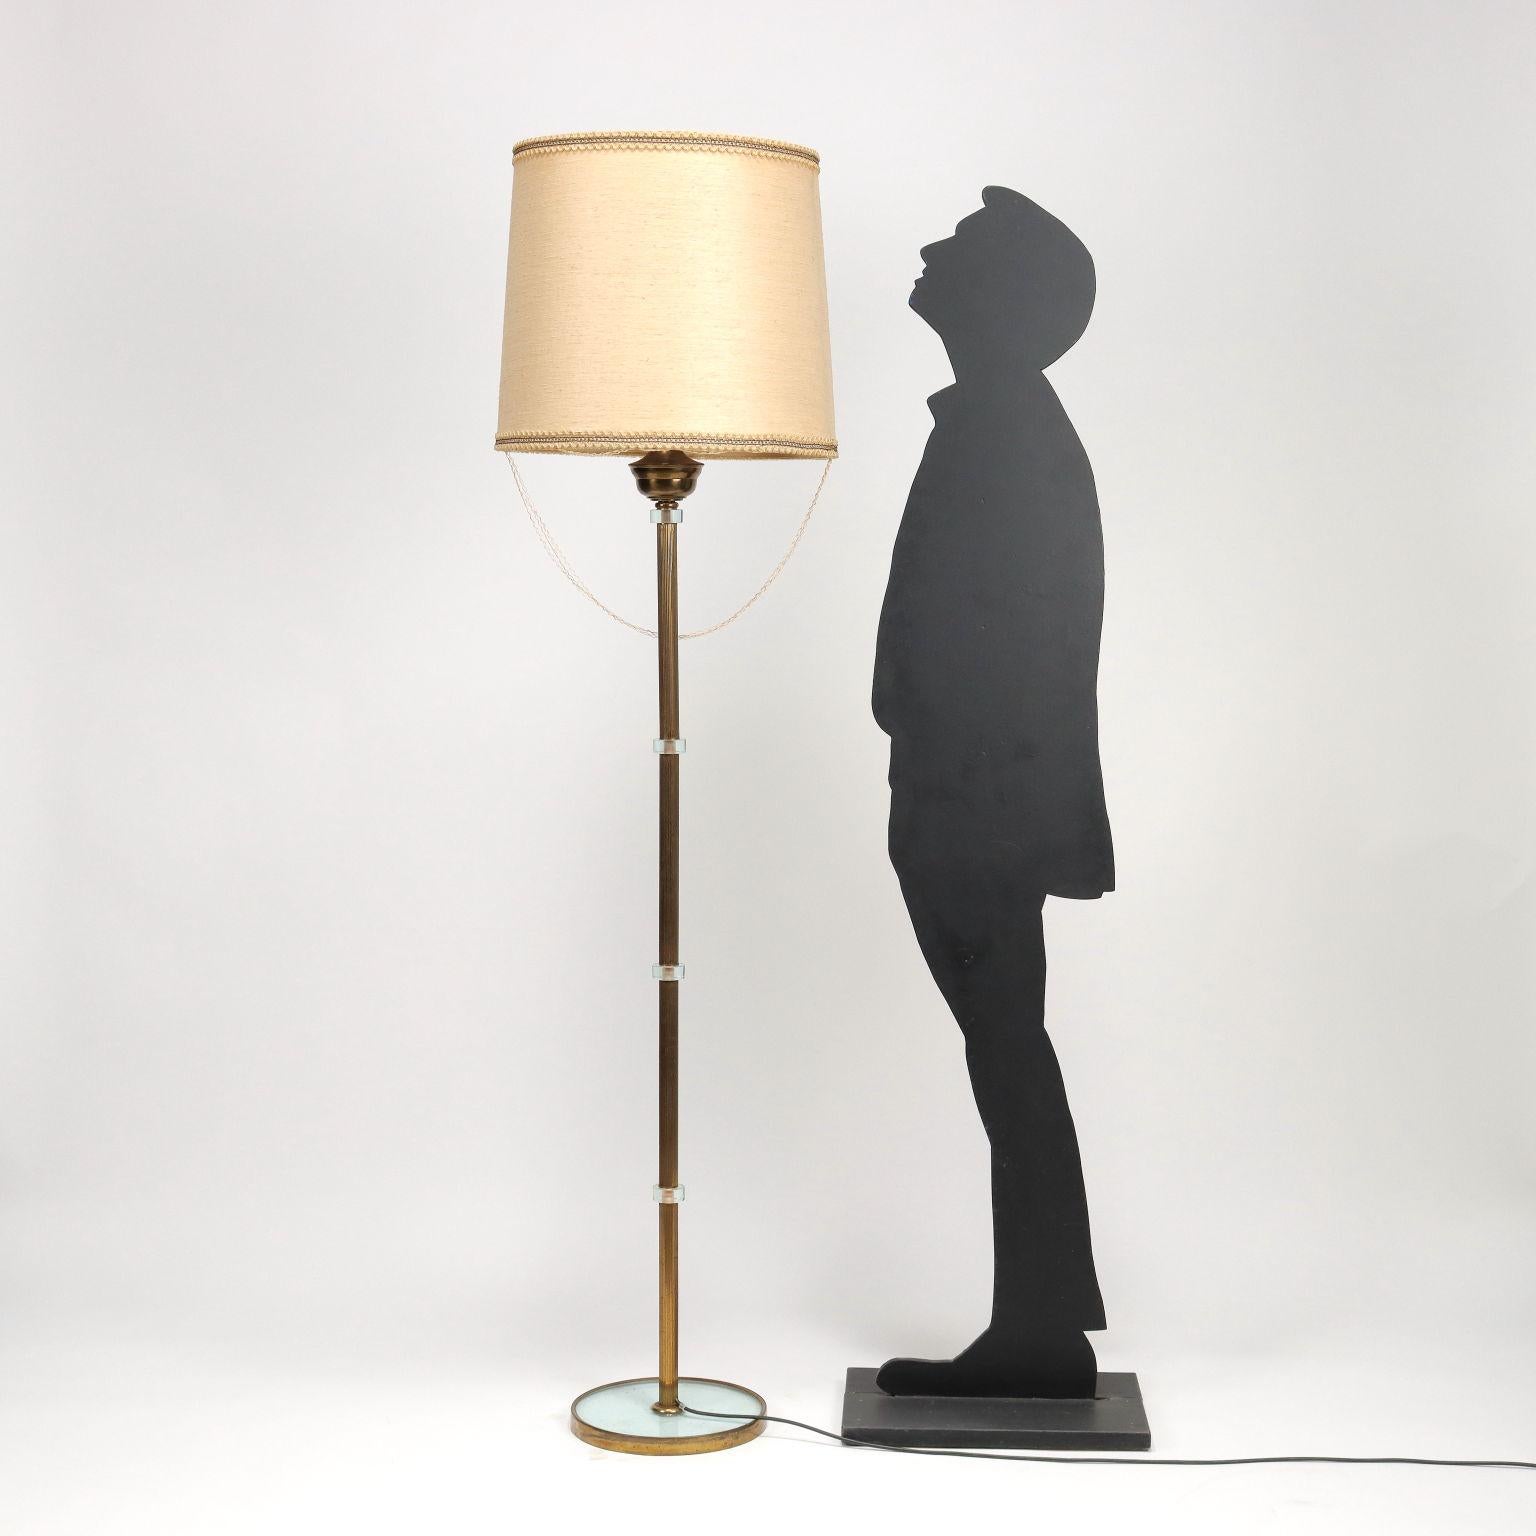 Stehlampe aus Messing und Glas, Lampenschirm  ist aus kunststoffbeschichtetem Gewebe gefertigt.